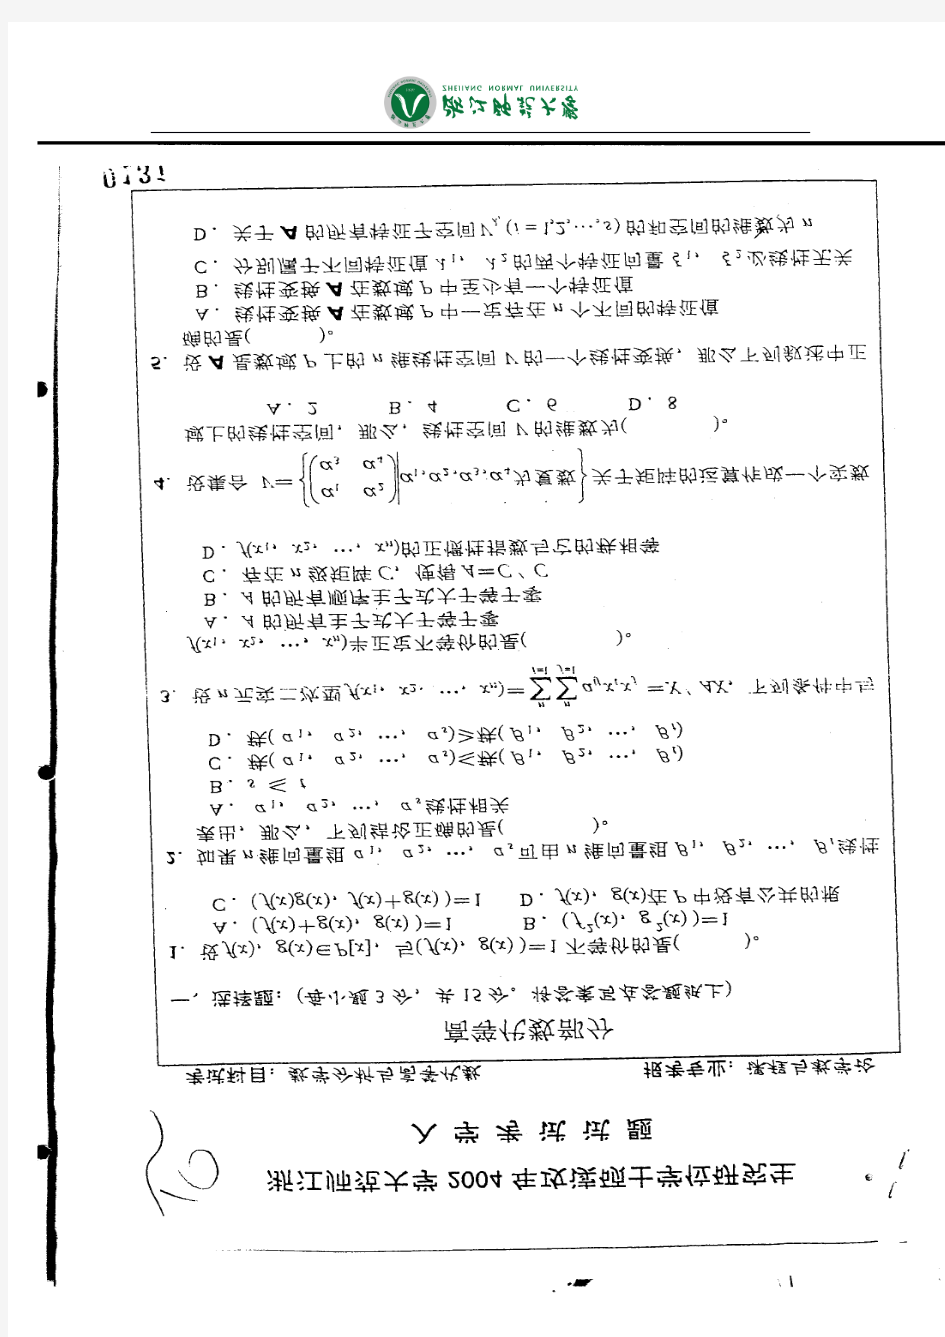 2004年浙江师范大学数学分析与高等代数考研试题